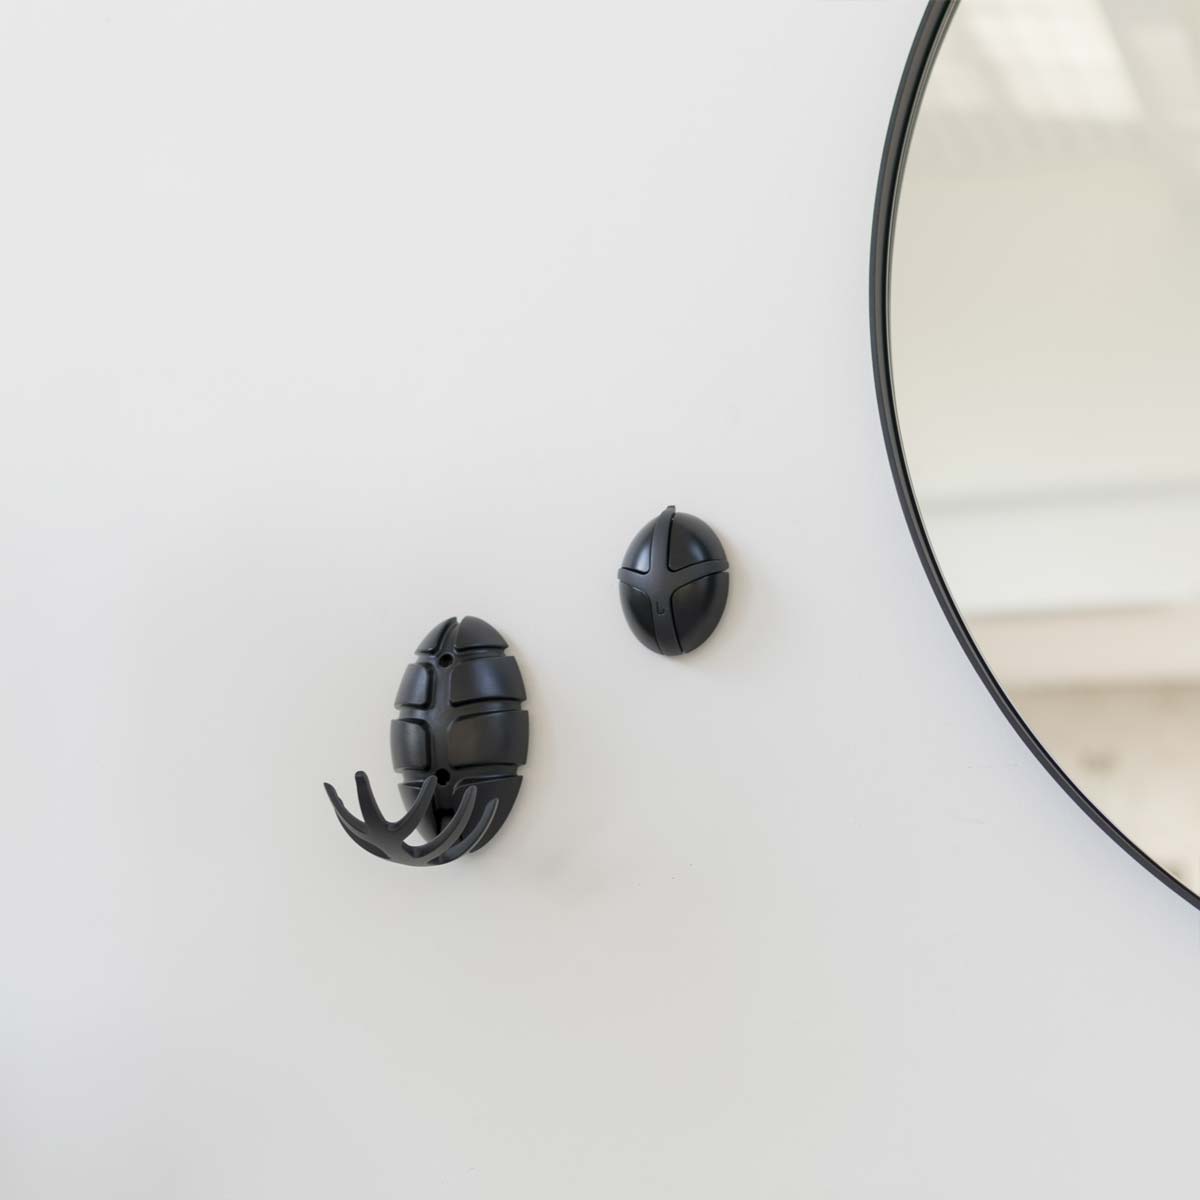 Bug Wandgarderobe – der kleine Käfer ist und leistet großartiges